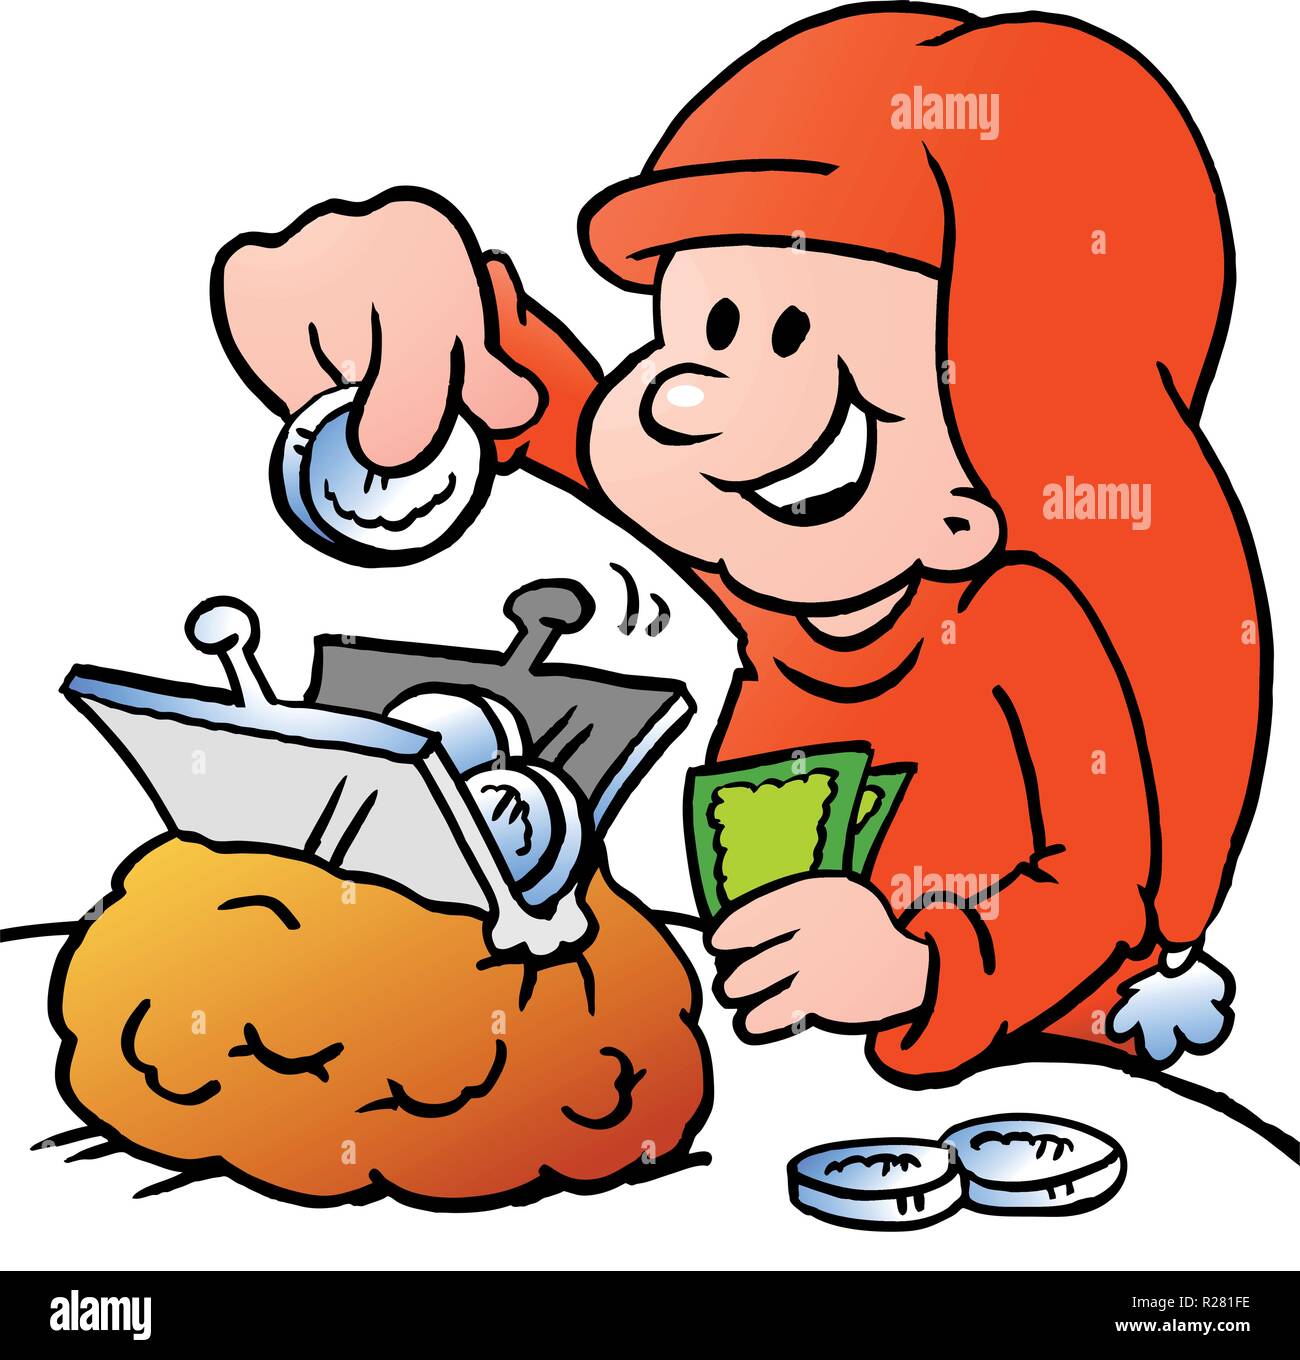 Disegnate a mano illustrazione vettoriale di un felice Natale Elf risparmio di denaro Illustrazione Vettoriale